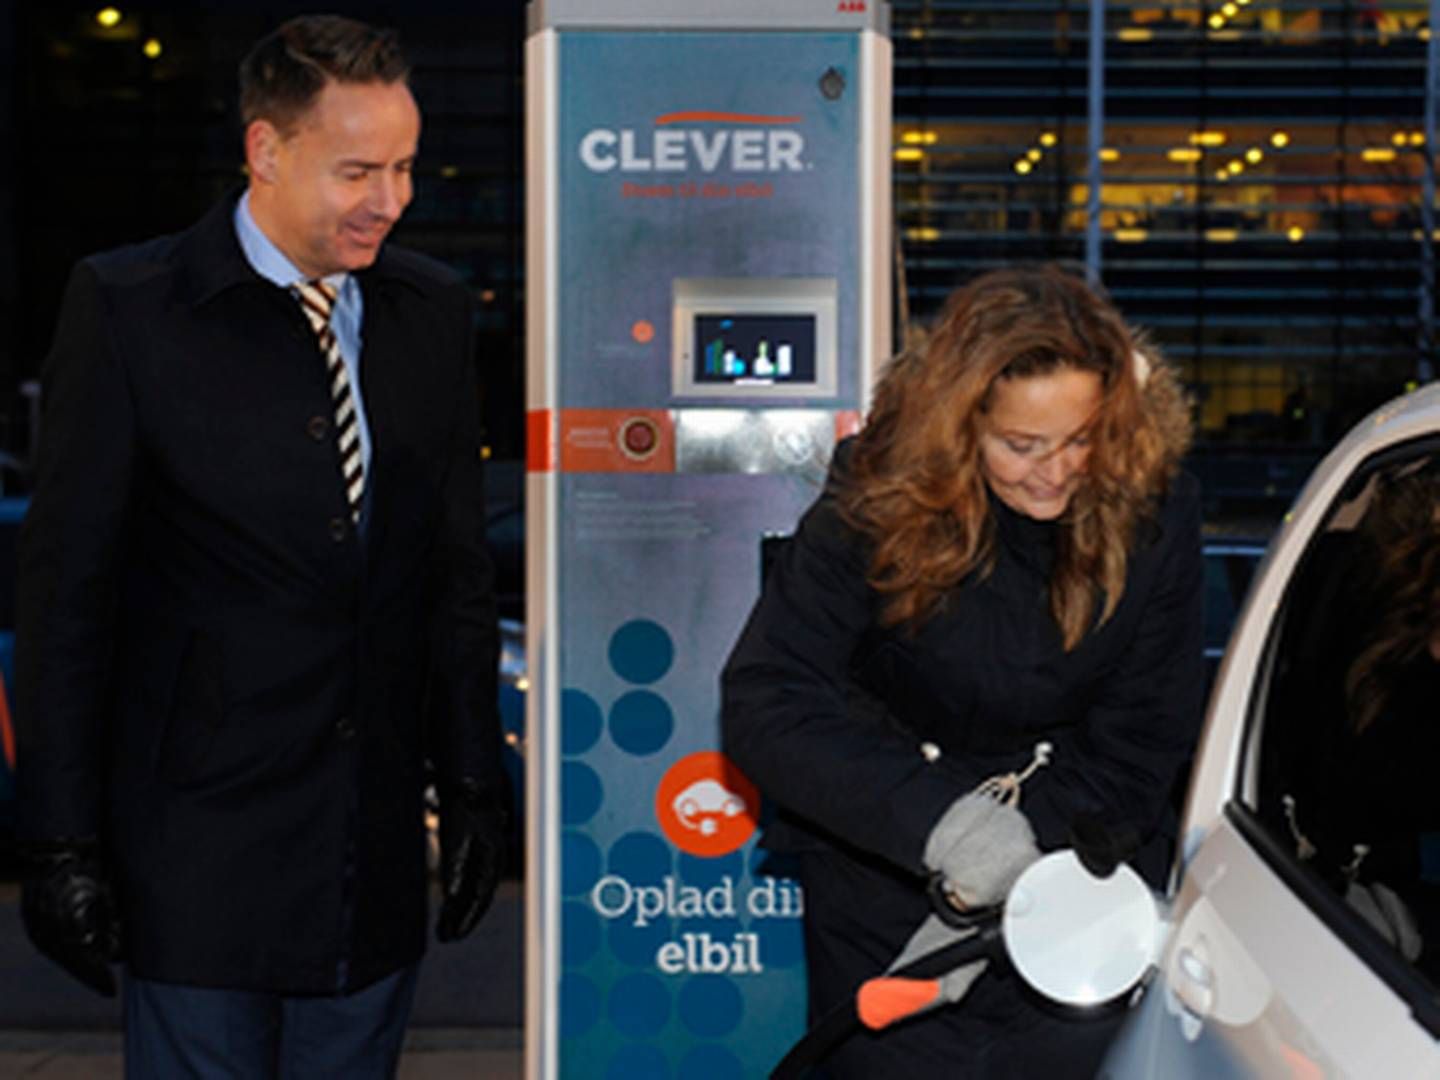 Den første nye ABB-hurtiglader blev indviet af transportminister Pia Olsen Dyhr. | Foto: Clever/James Thisted